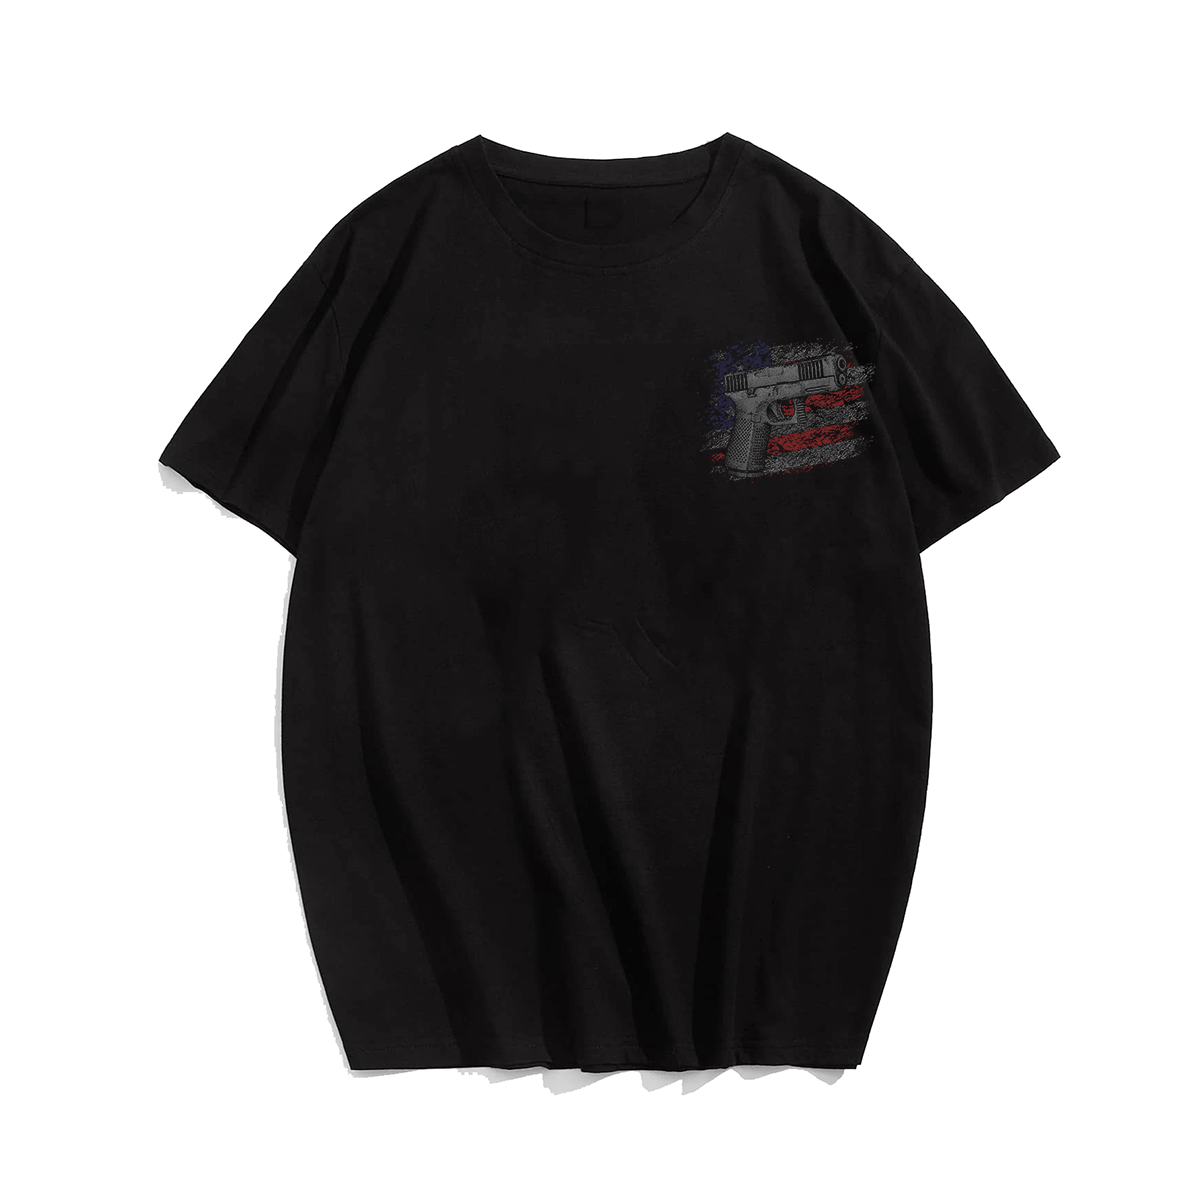 Cordless Hole Puncher Plus Size T-Shirt